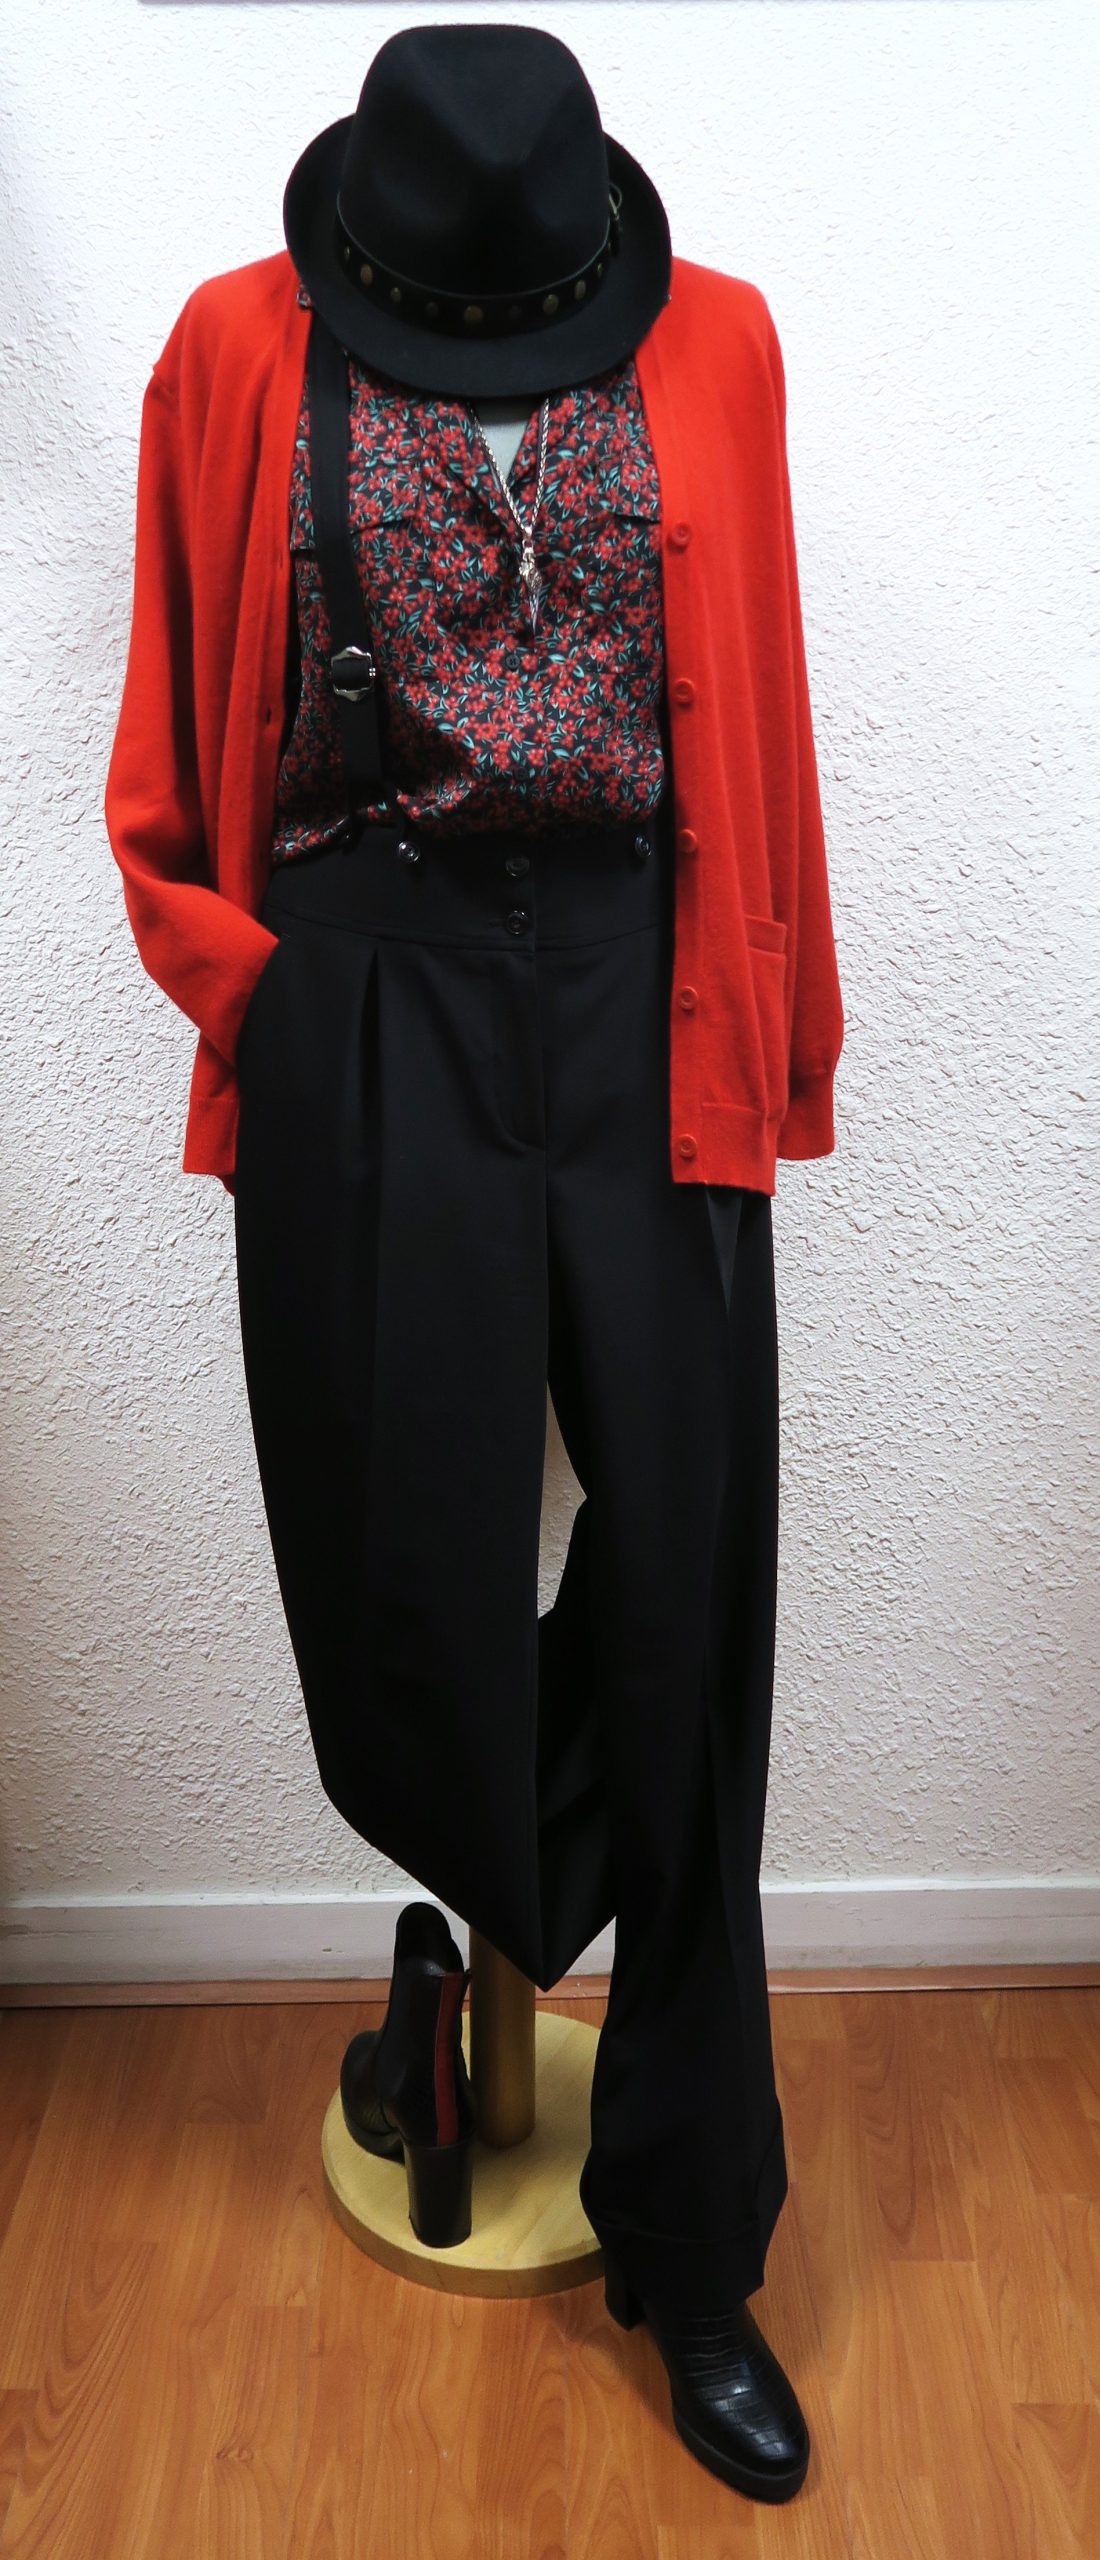 Veste + pantalon rouge et noir femme